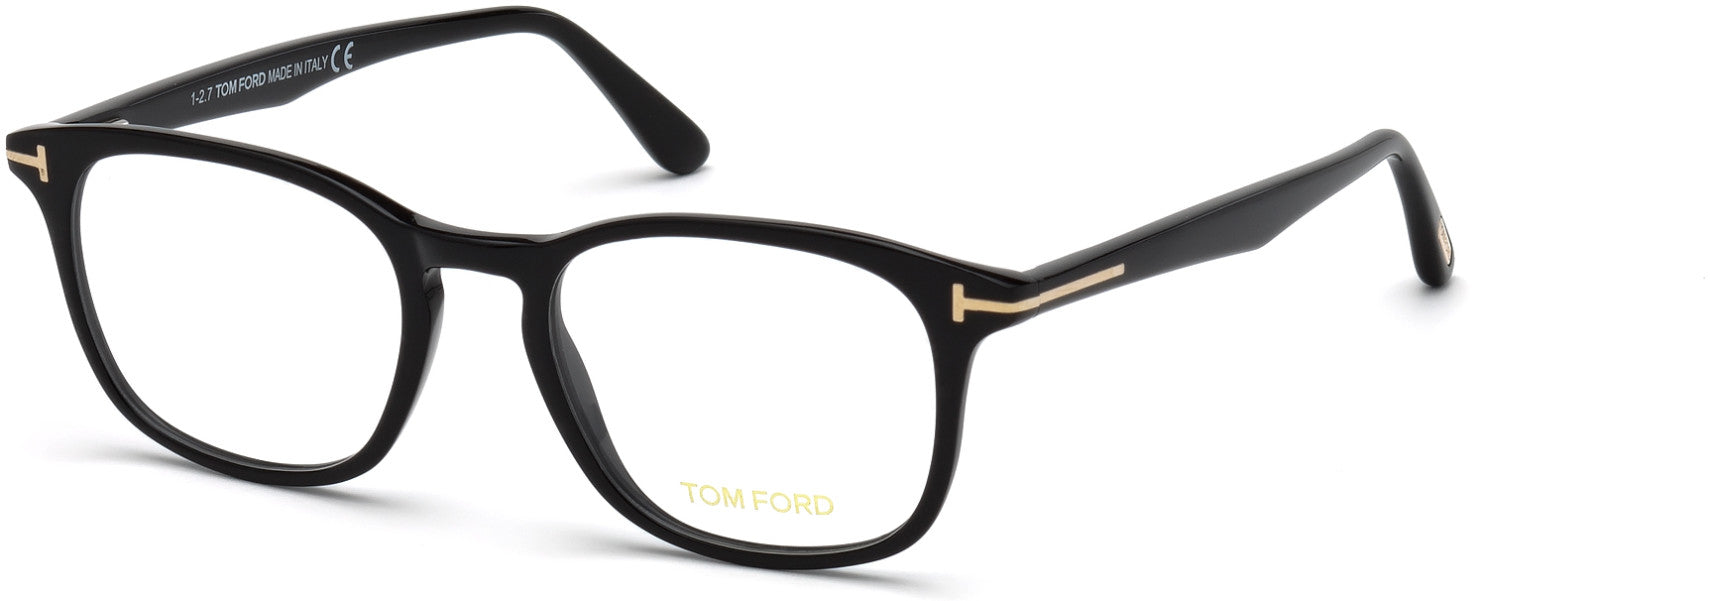 Tom Ford FT5505-F Geometric Eyeglasses 001-001 - Shiny Black